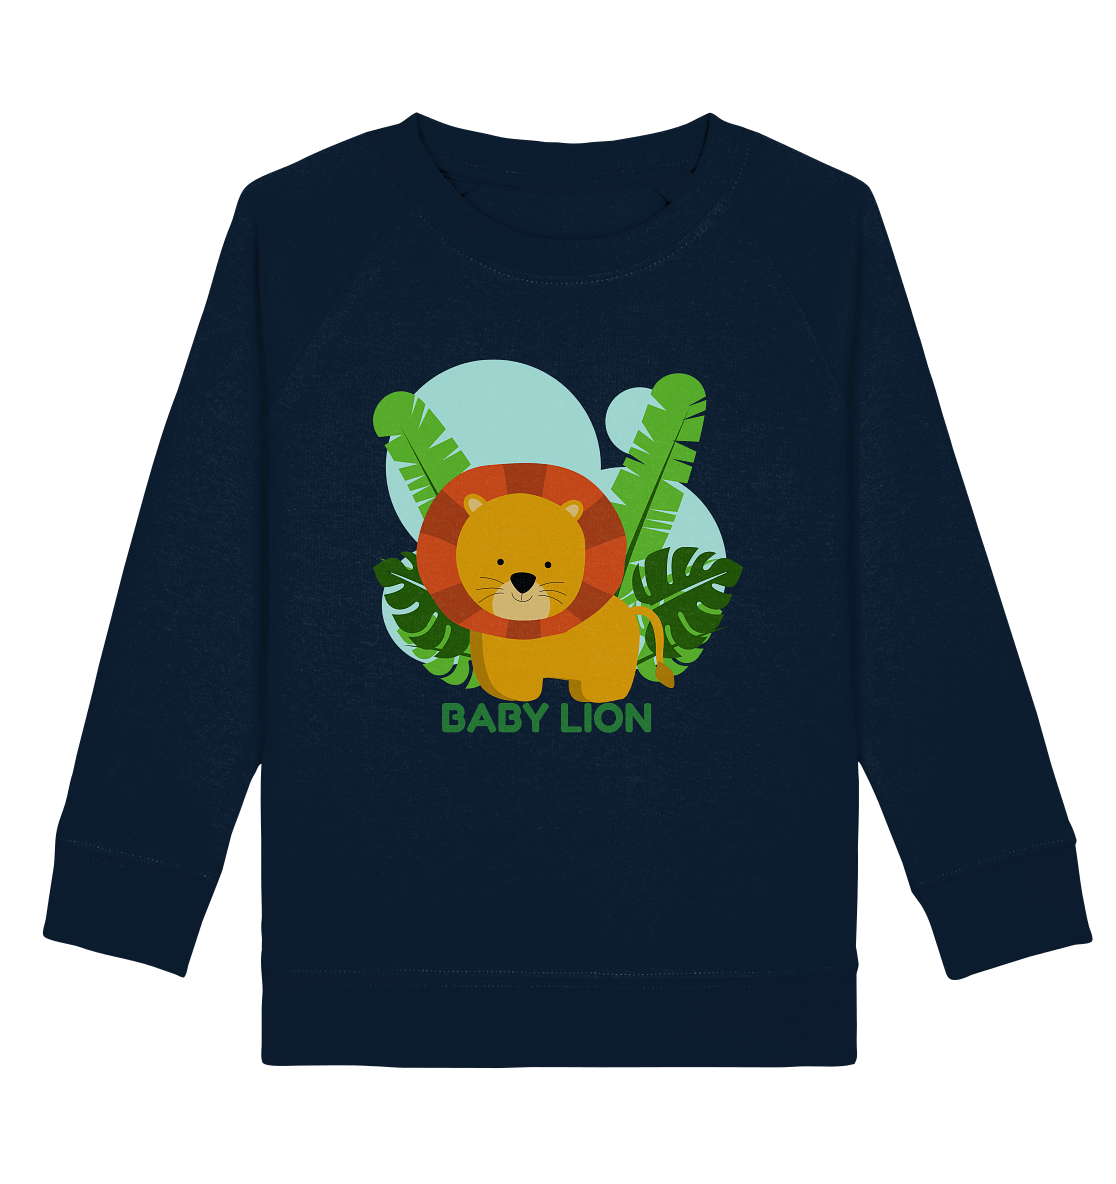  Kinder Sweatshirt mit kleinem Löwen Print und der Beschriftung Baby Lion.